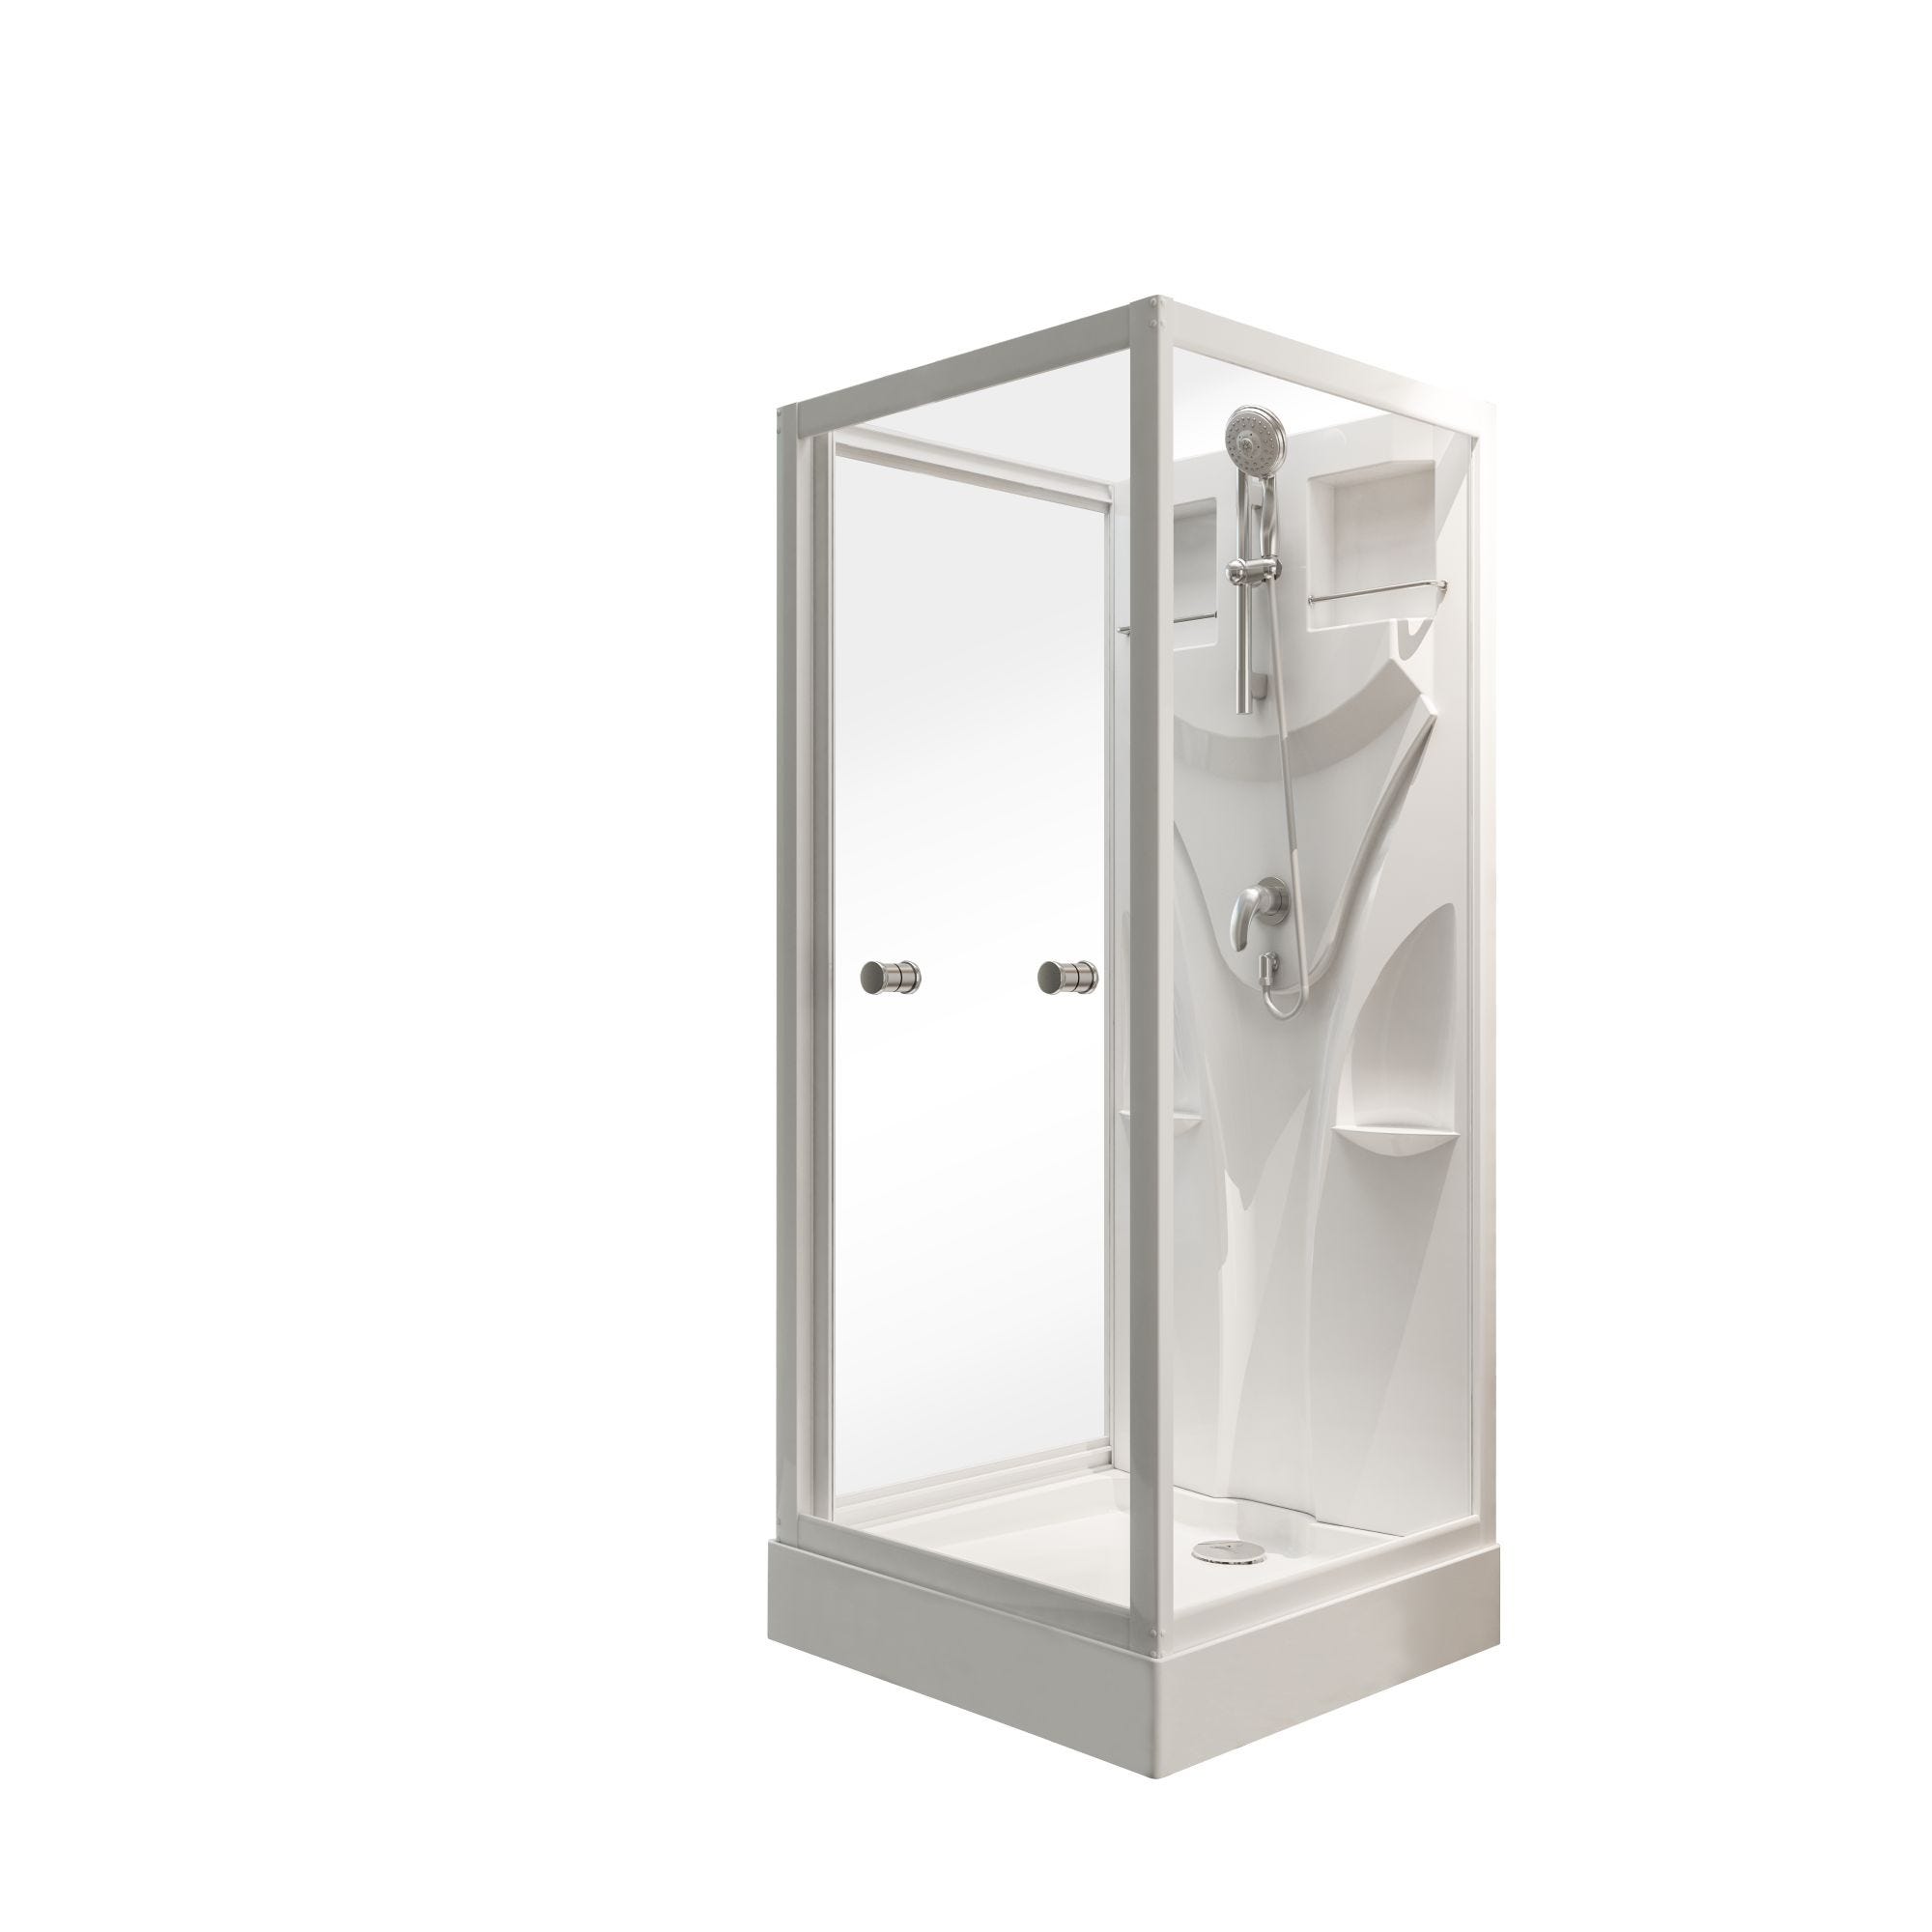 Schulte cabine de douche intégrale, 90 x 90 x 210 cm, verre de sécurité 5 mm, cabine de douche complète, blanc alpin, Juist 1